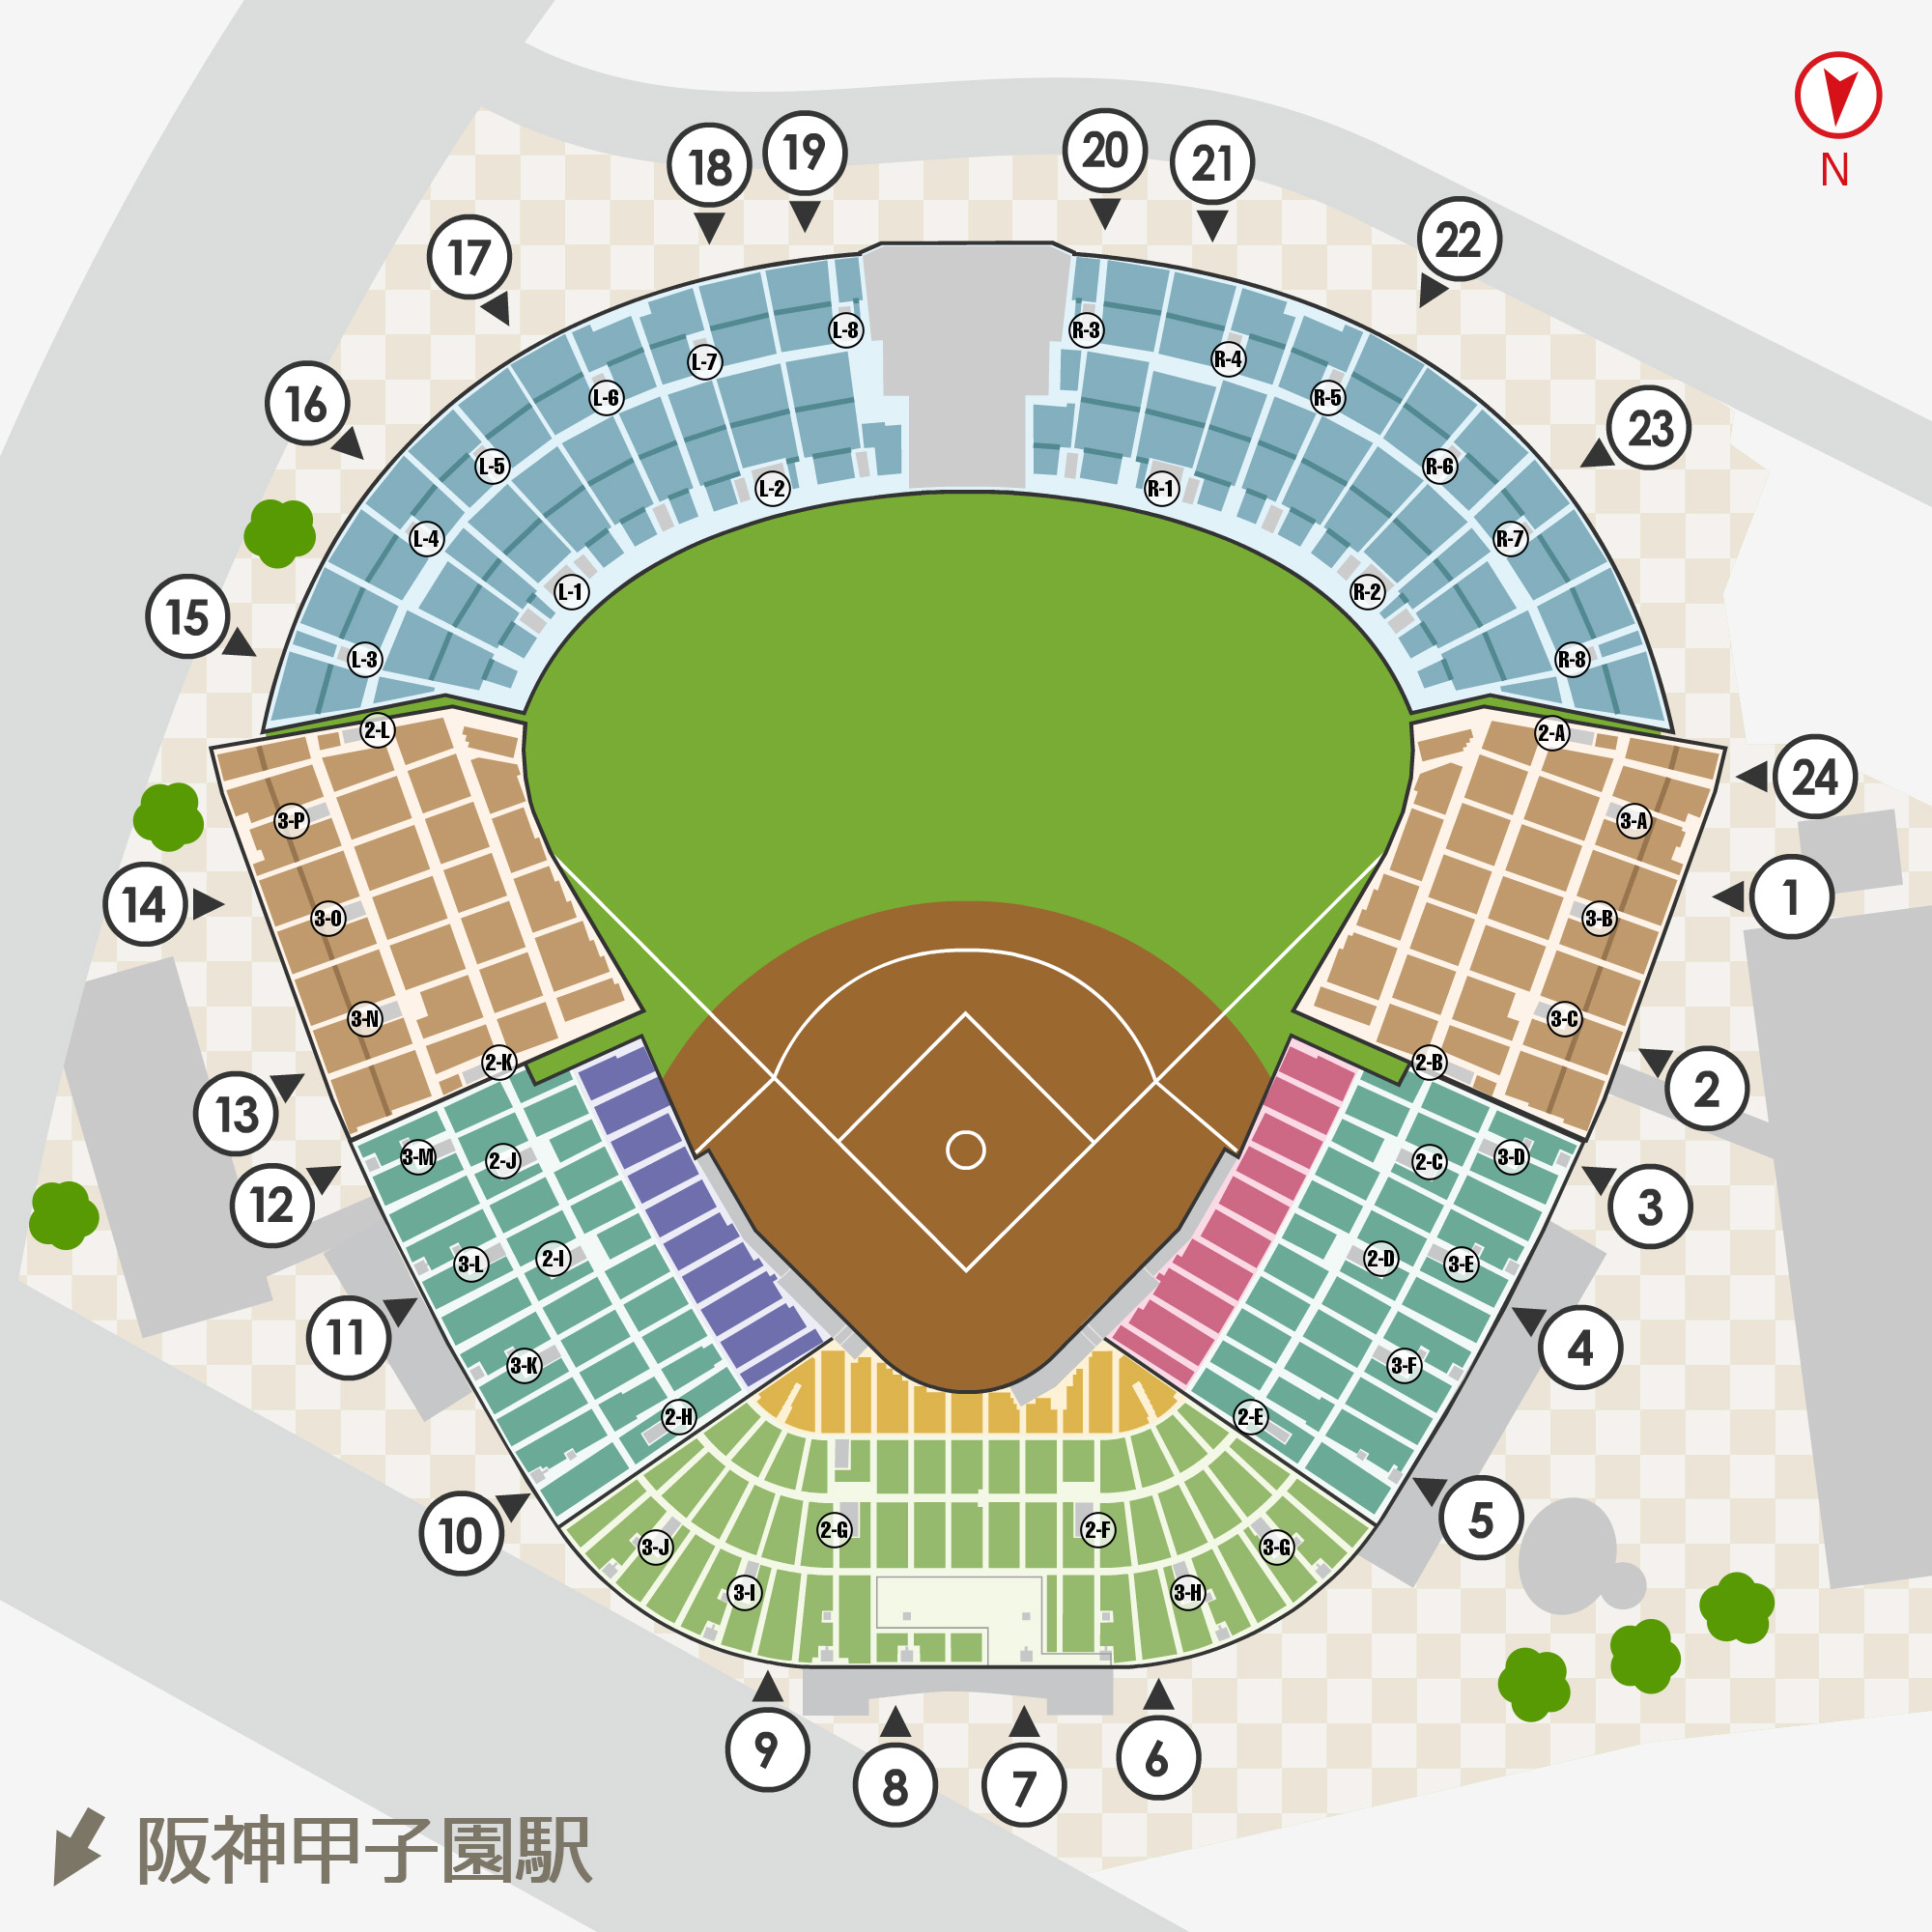 甲子園 チケット 高校野球8 12中央指定席上段